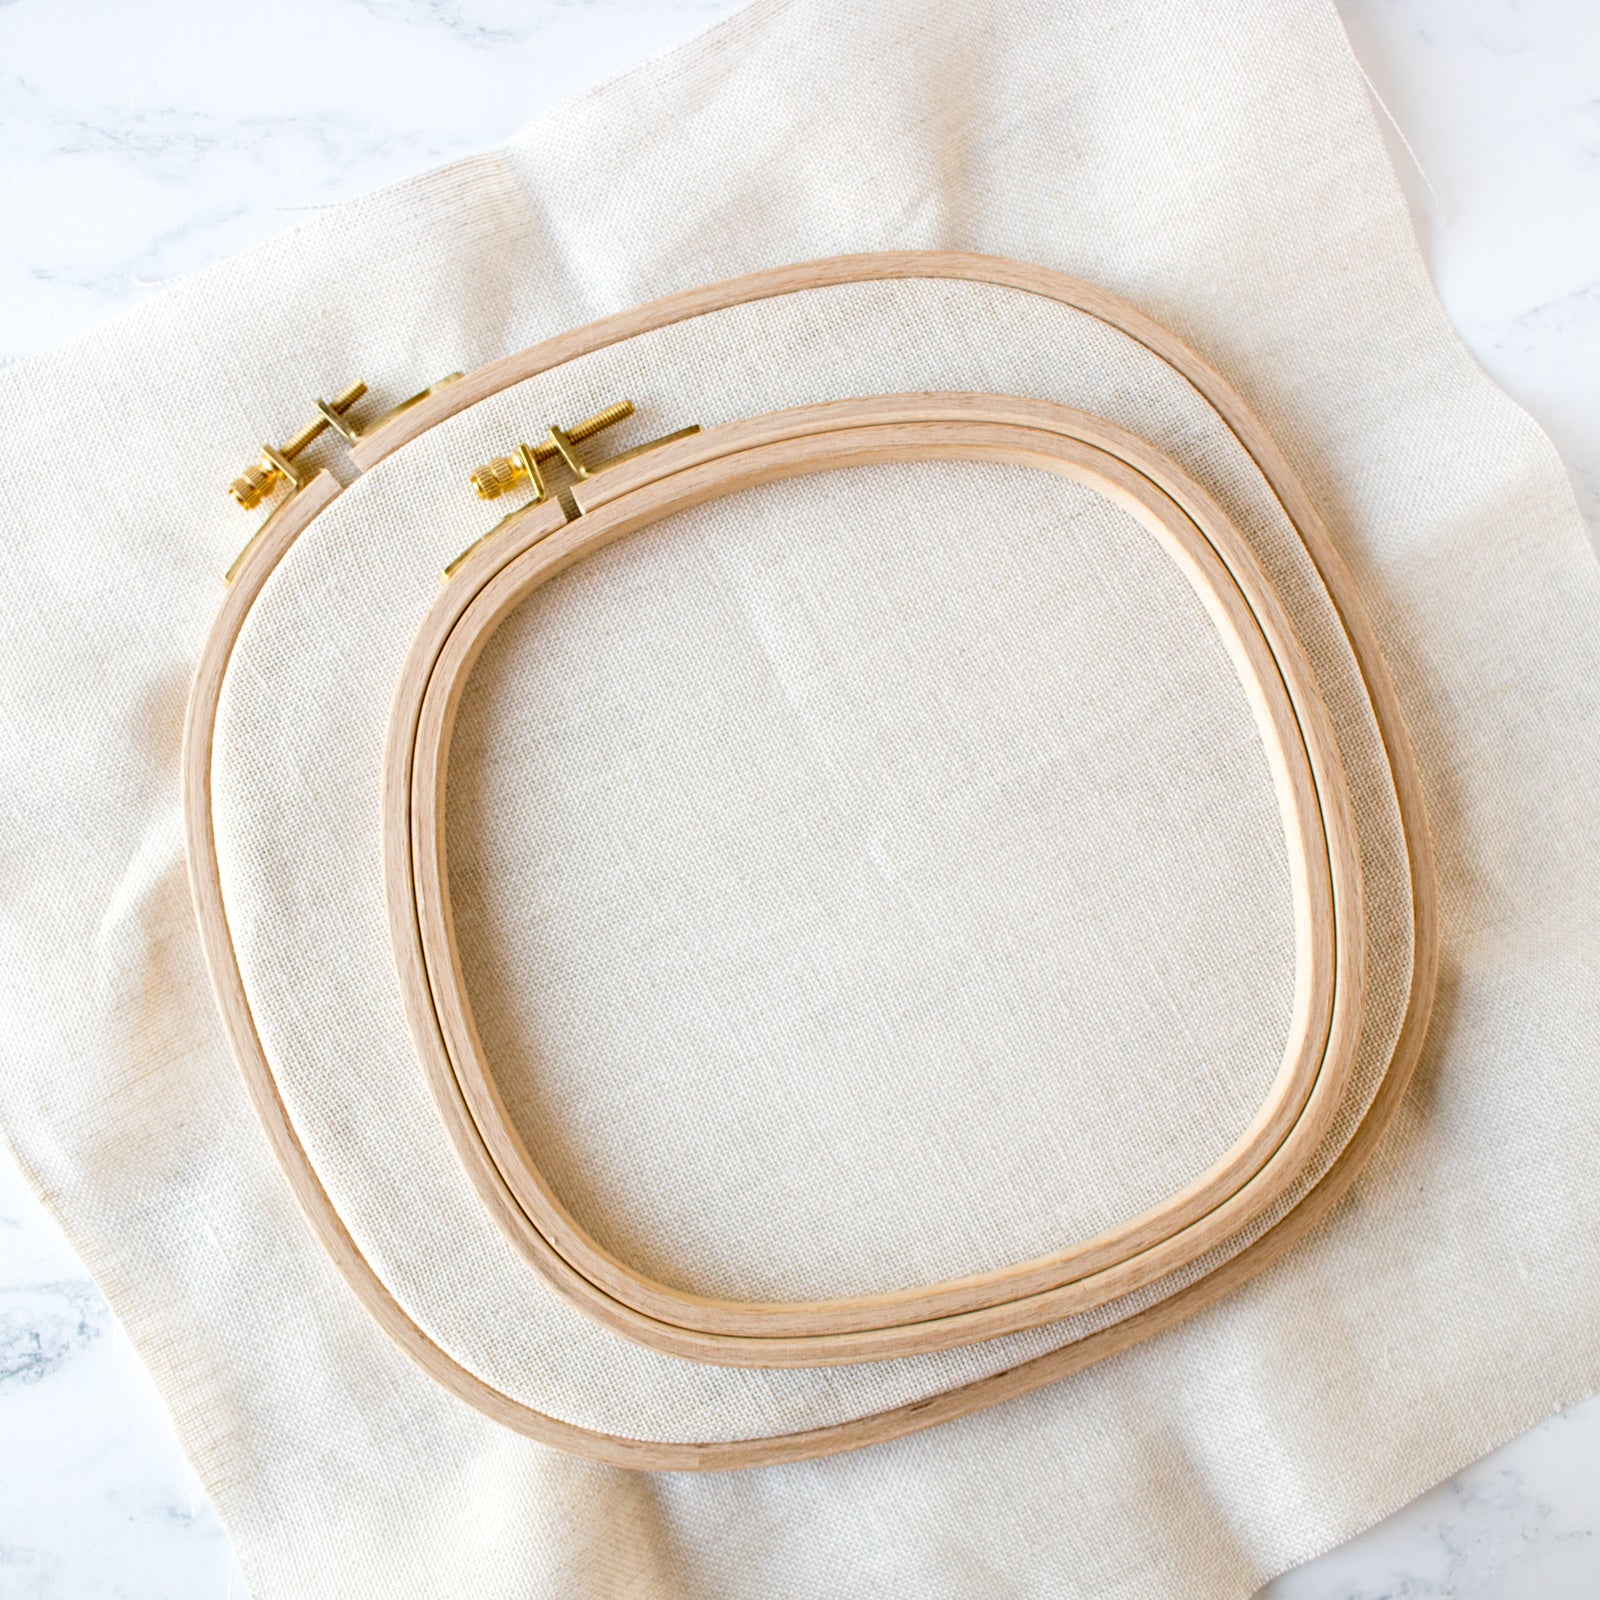 Premium polished beechwood embroidery hoop